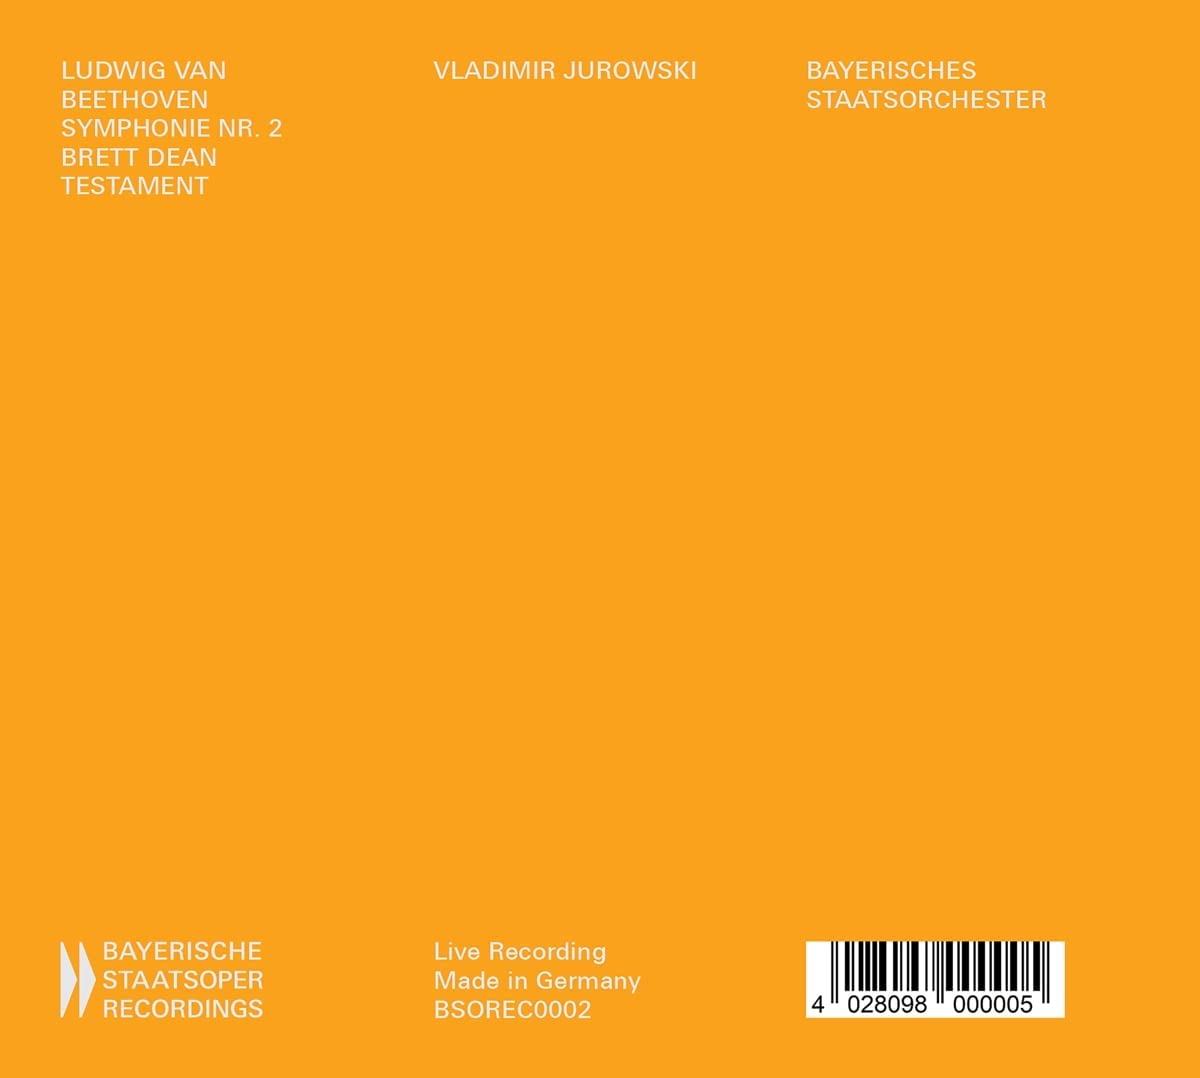 Vladimir Jurowski 베토벤: 교향곡 2번 / 브렛 딘: 테이스트먼트 (Beethoven: Symphony No. 2 / Brett Dean: Testament)